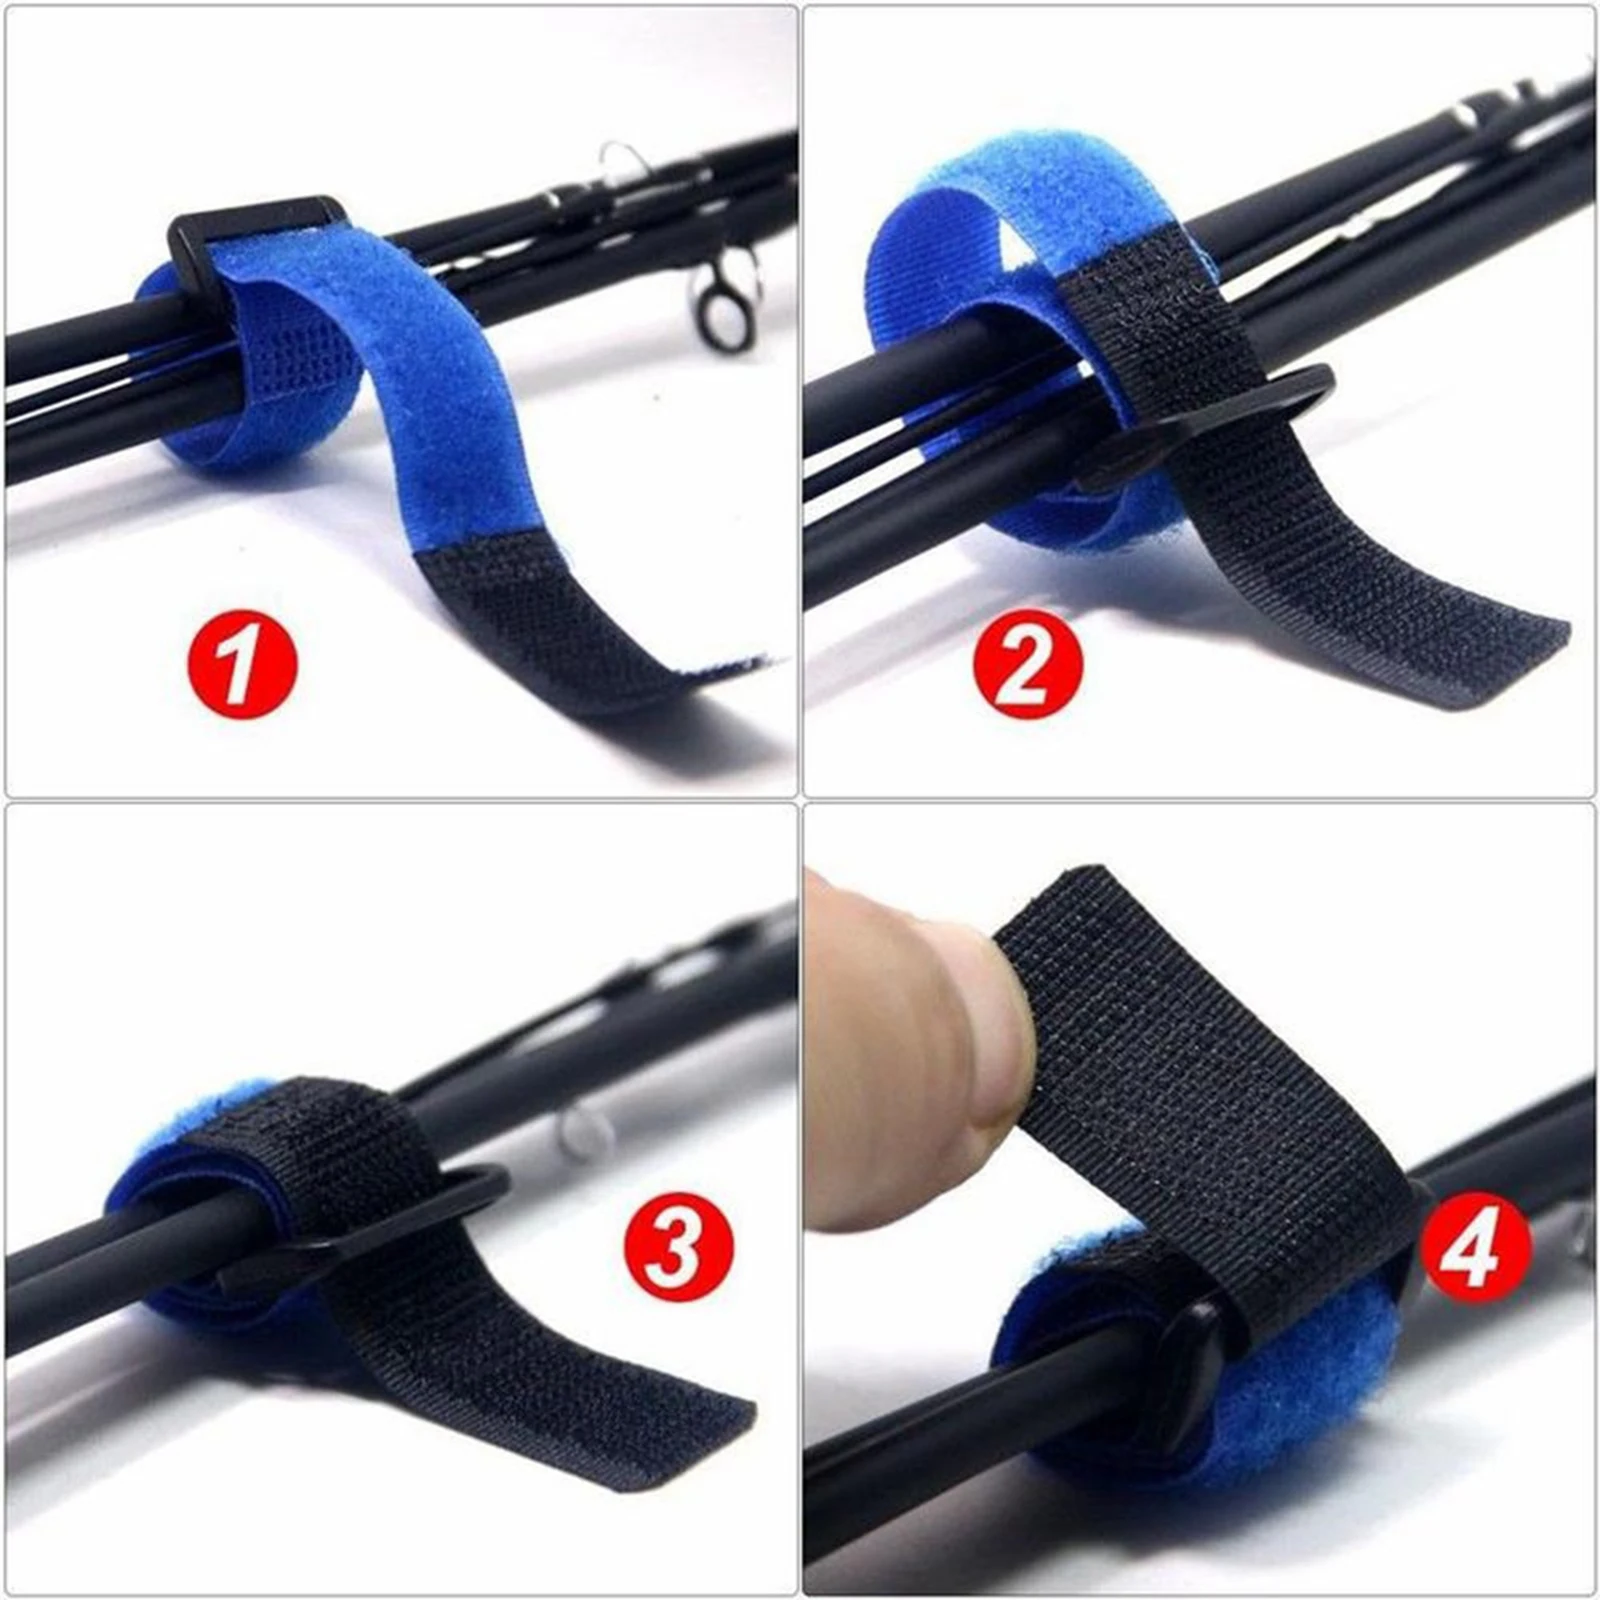 10pcs Fishing Rods Belt Ties Strap Stretchy Cable Belt Suspender Fastener Holder Compression Bag Backpack Luggage Straps Band